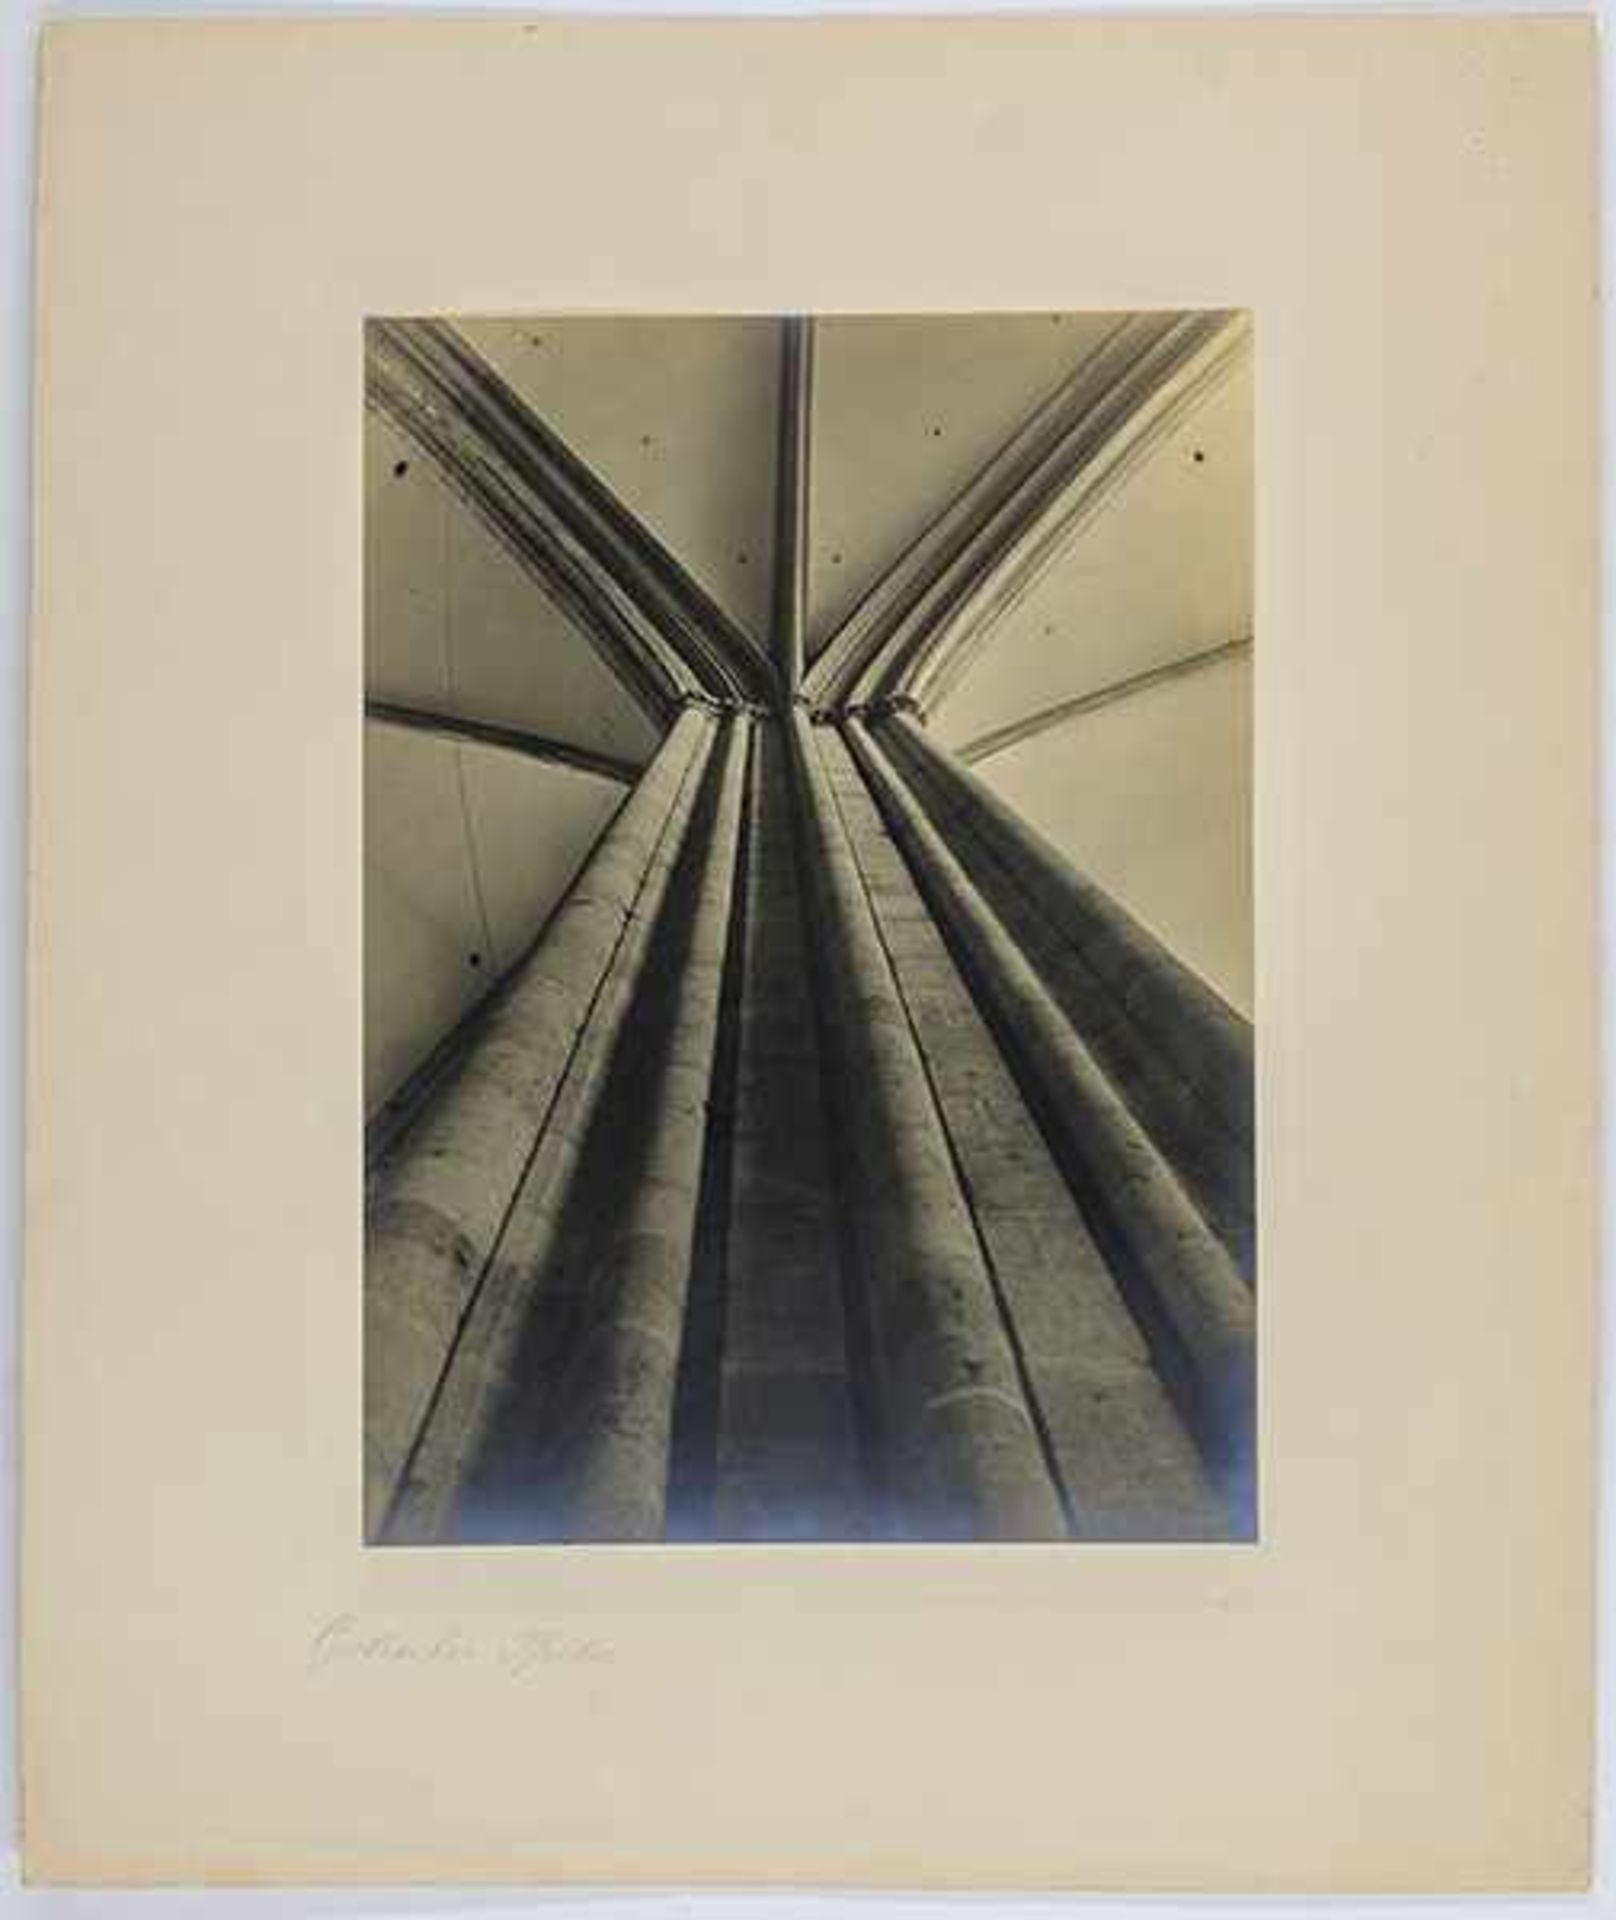 Lohr, Max. Gotischer Pfeiler. Original-Photographie. Vintage. Silbergelatine. 1930. Format: 39,5 x - Bild 3 aus 3